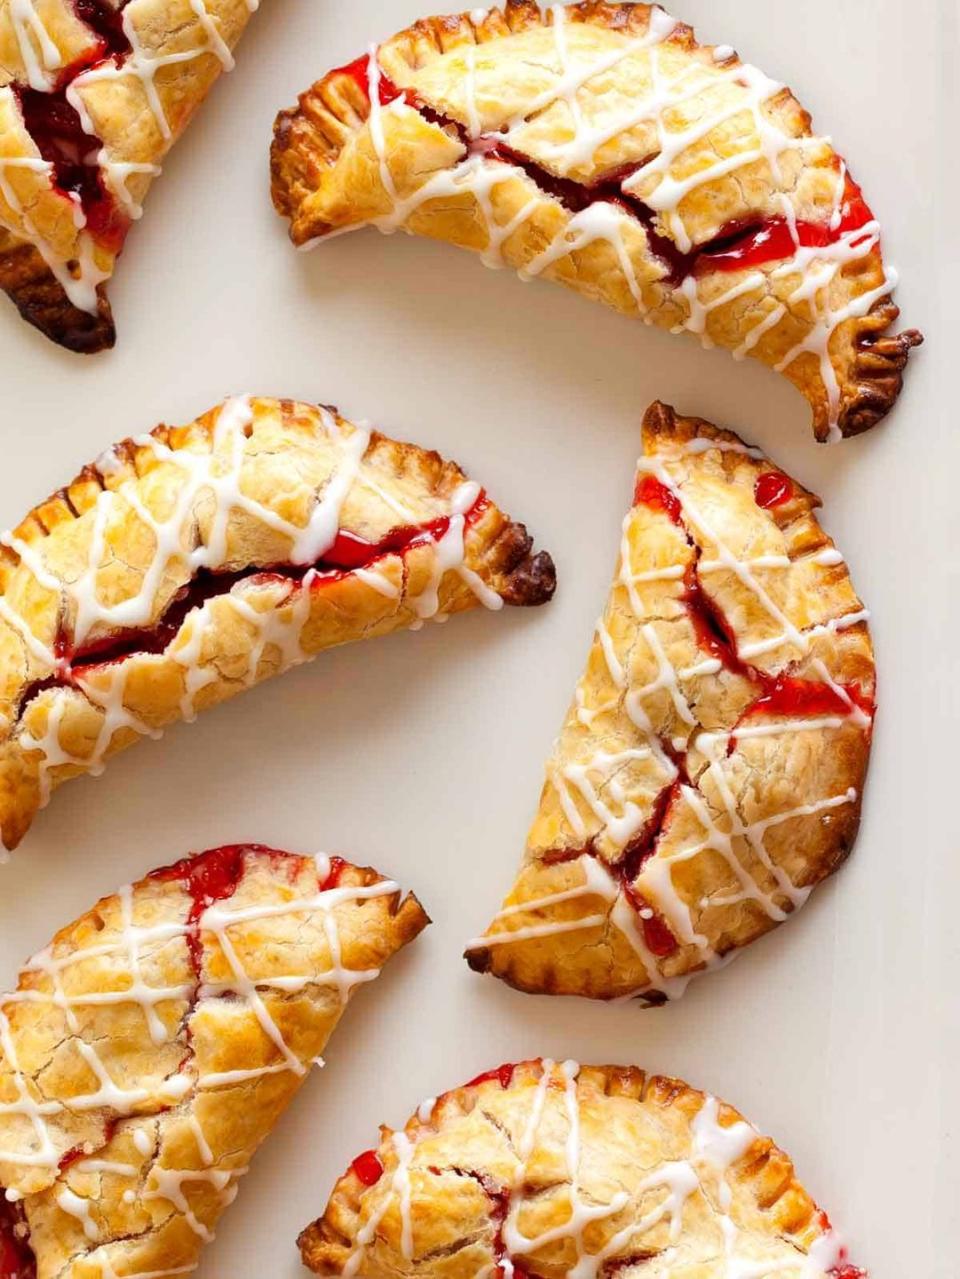 Cherry Hand Pies